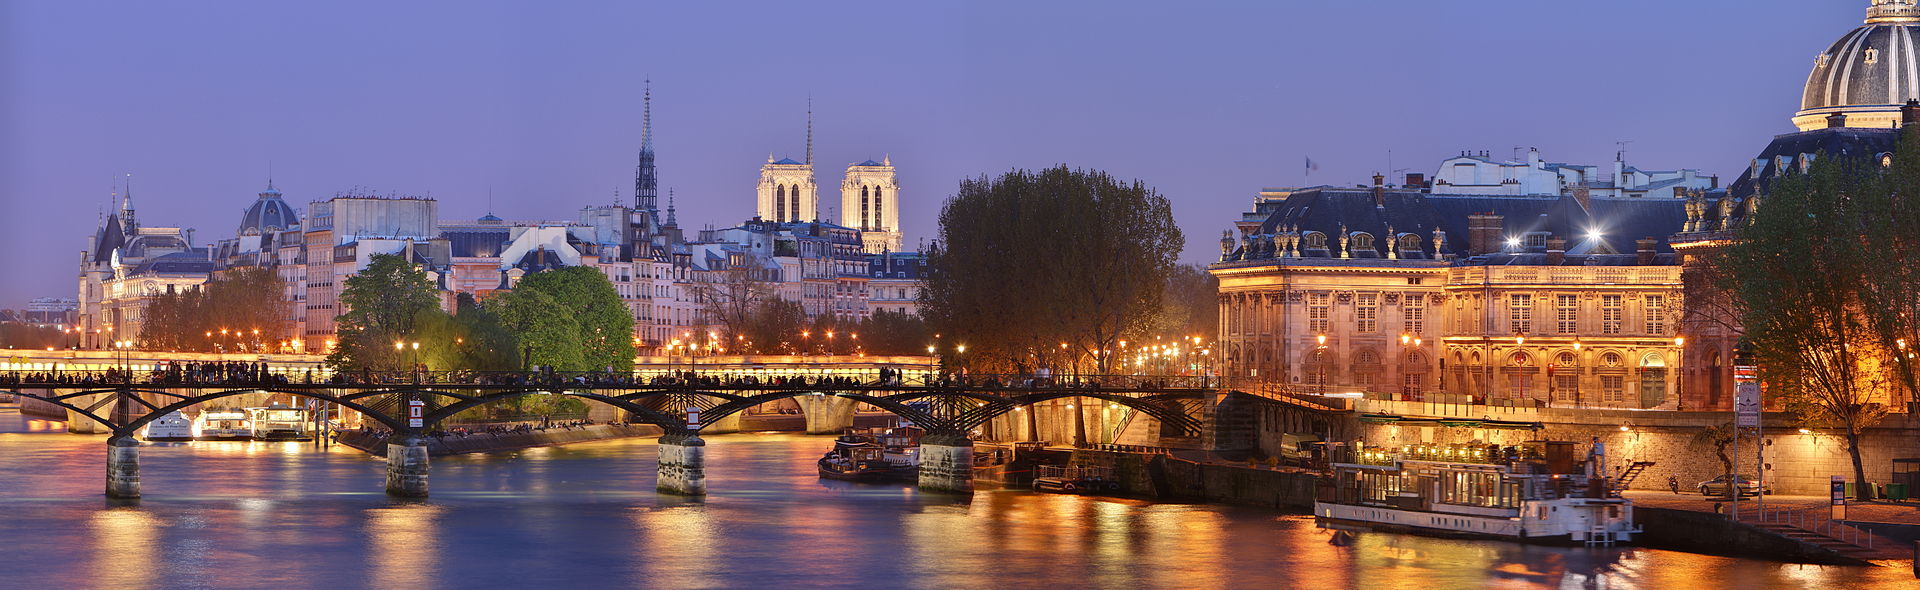 Pont_des_Arts, _Paris